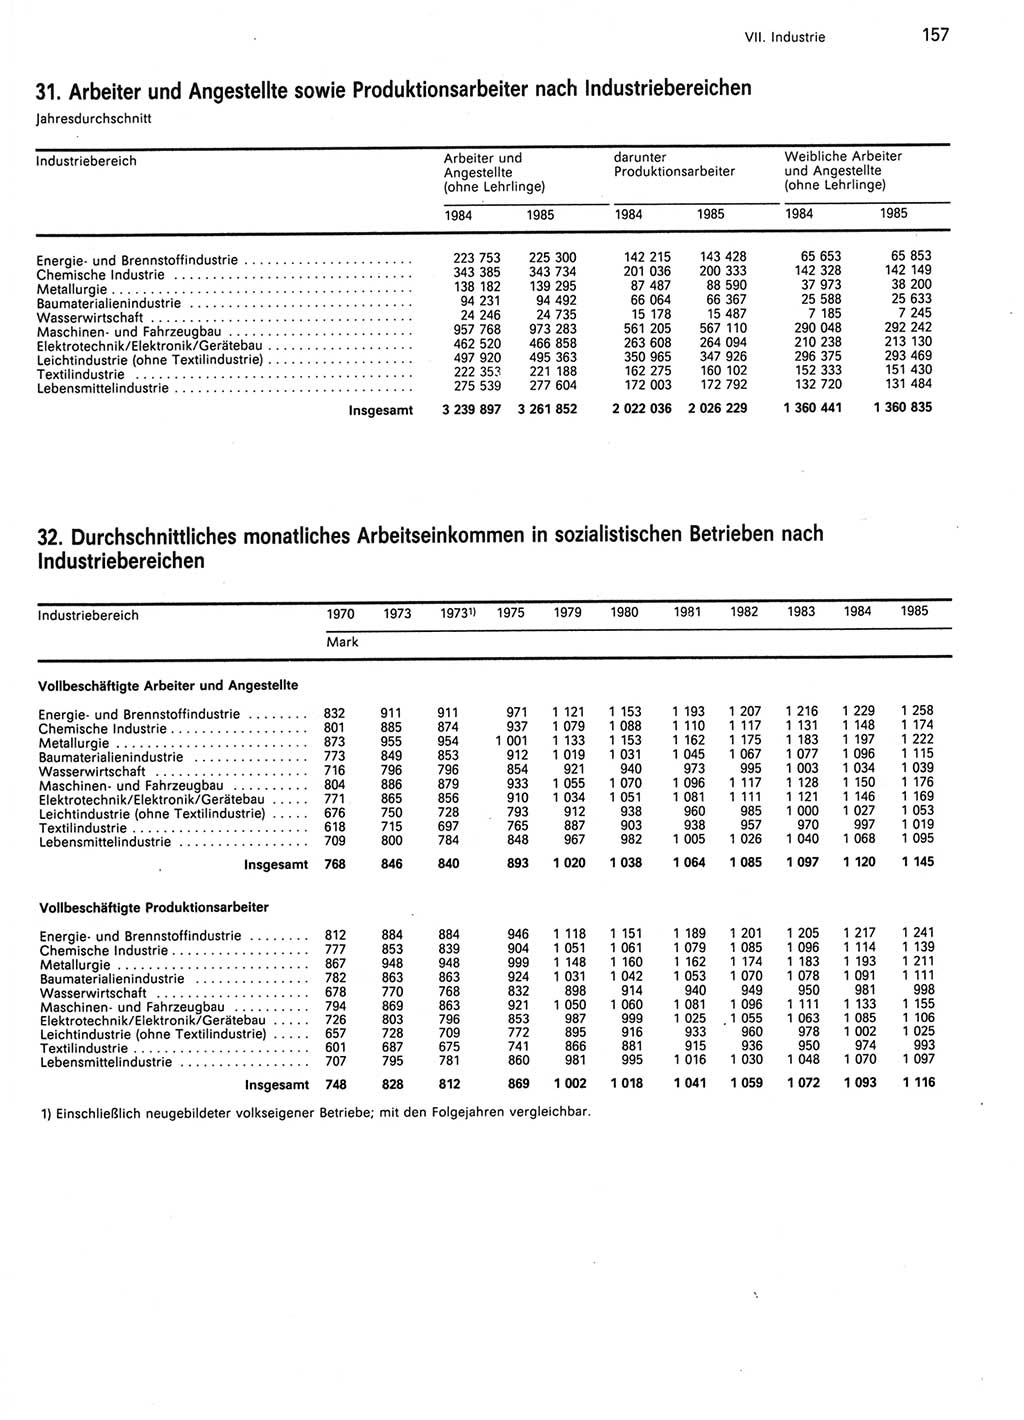 Statistisches Jahrbuch der Deutschen Demokratischen Republik (DDR) 1986, Seite 157 (Stat. Jb. DDR 1986, S. 157)